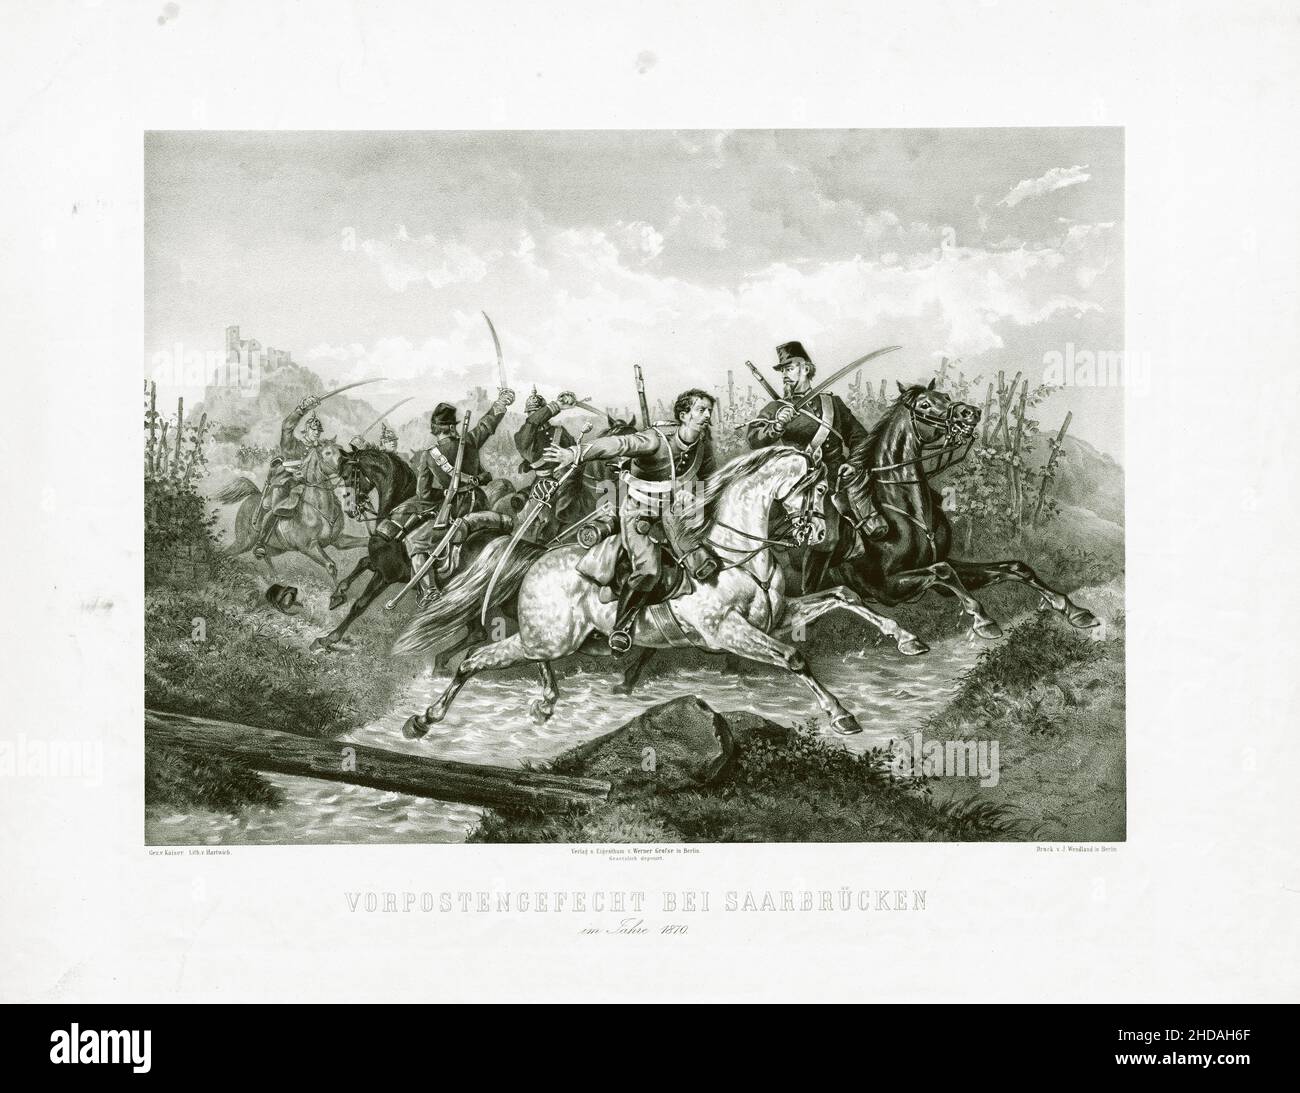 Gravure de la guerre franco-prussienne : bataille des avant-postes près de Saarbrücken en 1870.1872 Banque D'Images